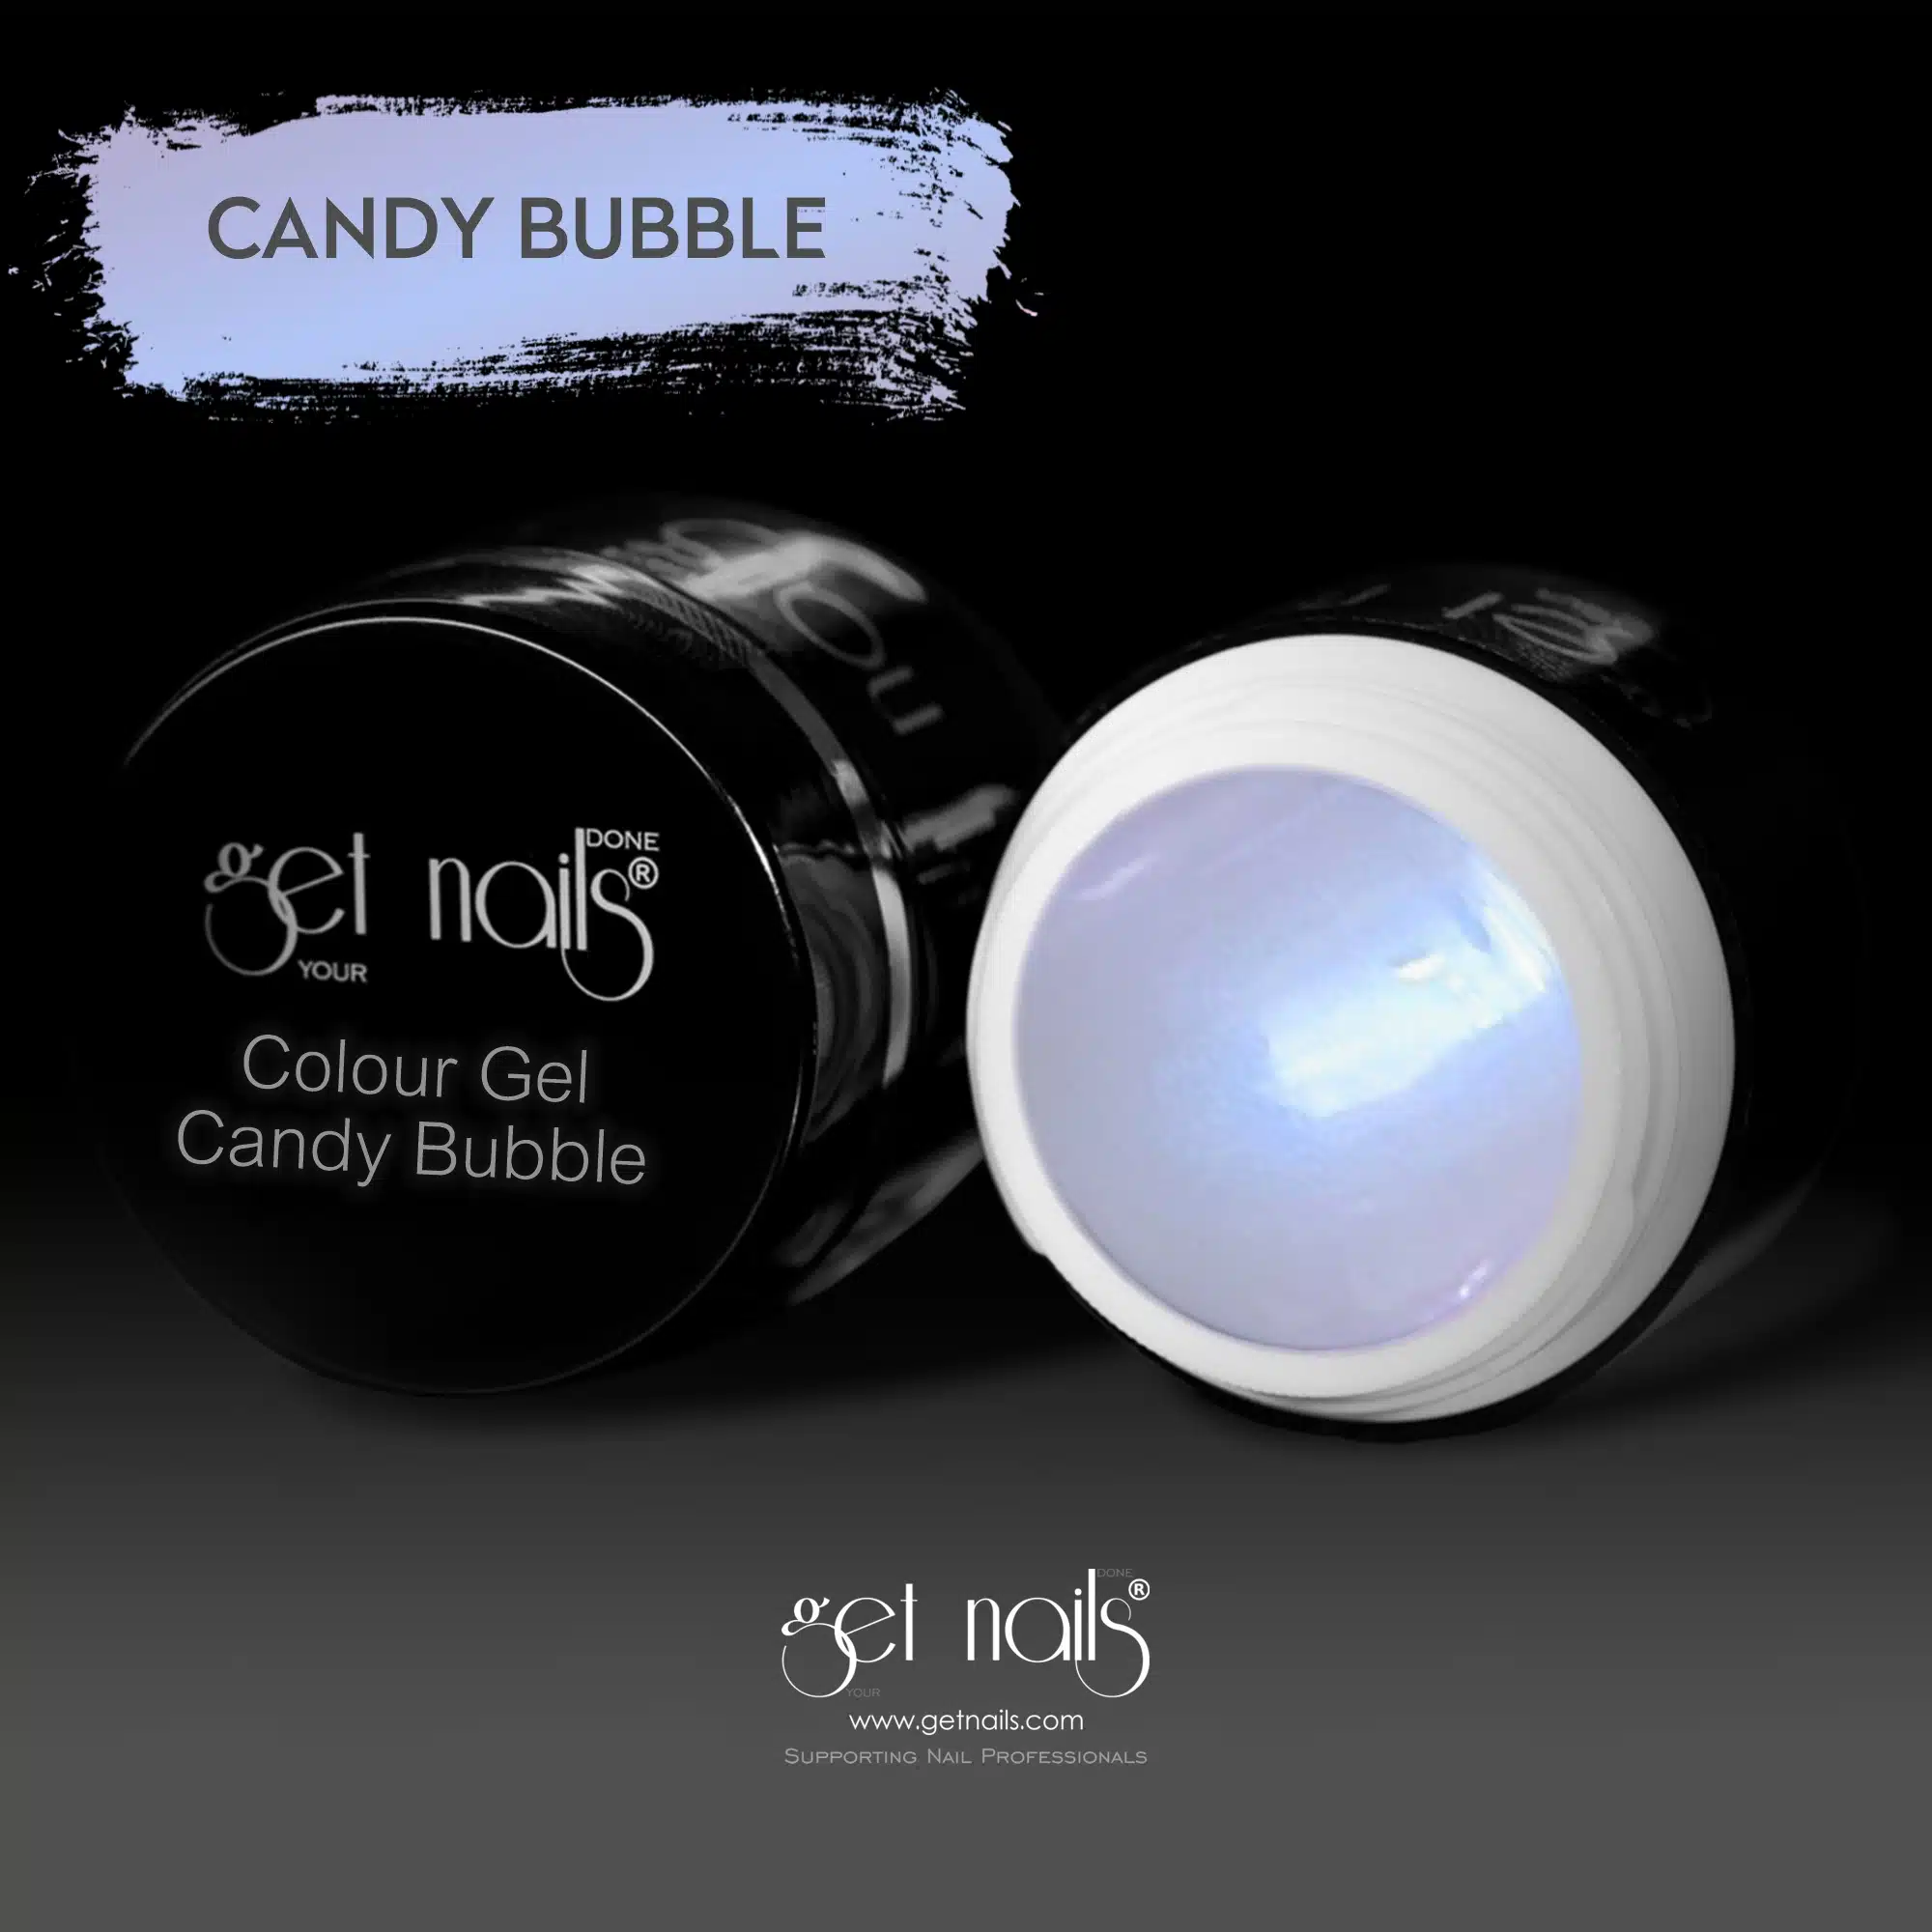 Get Nails Austria - Цветной гель Candy Bubble 5g